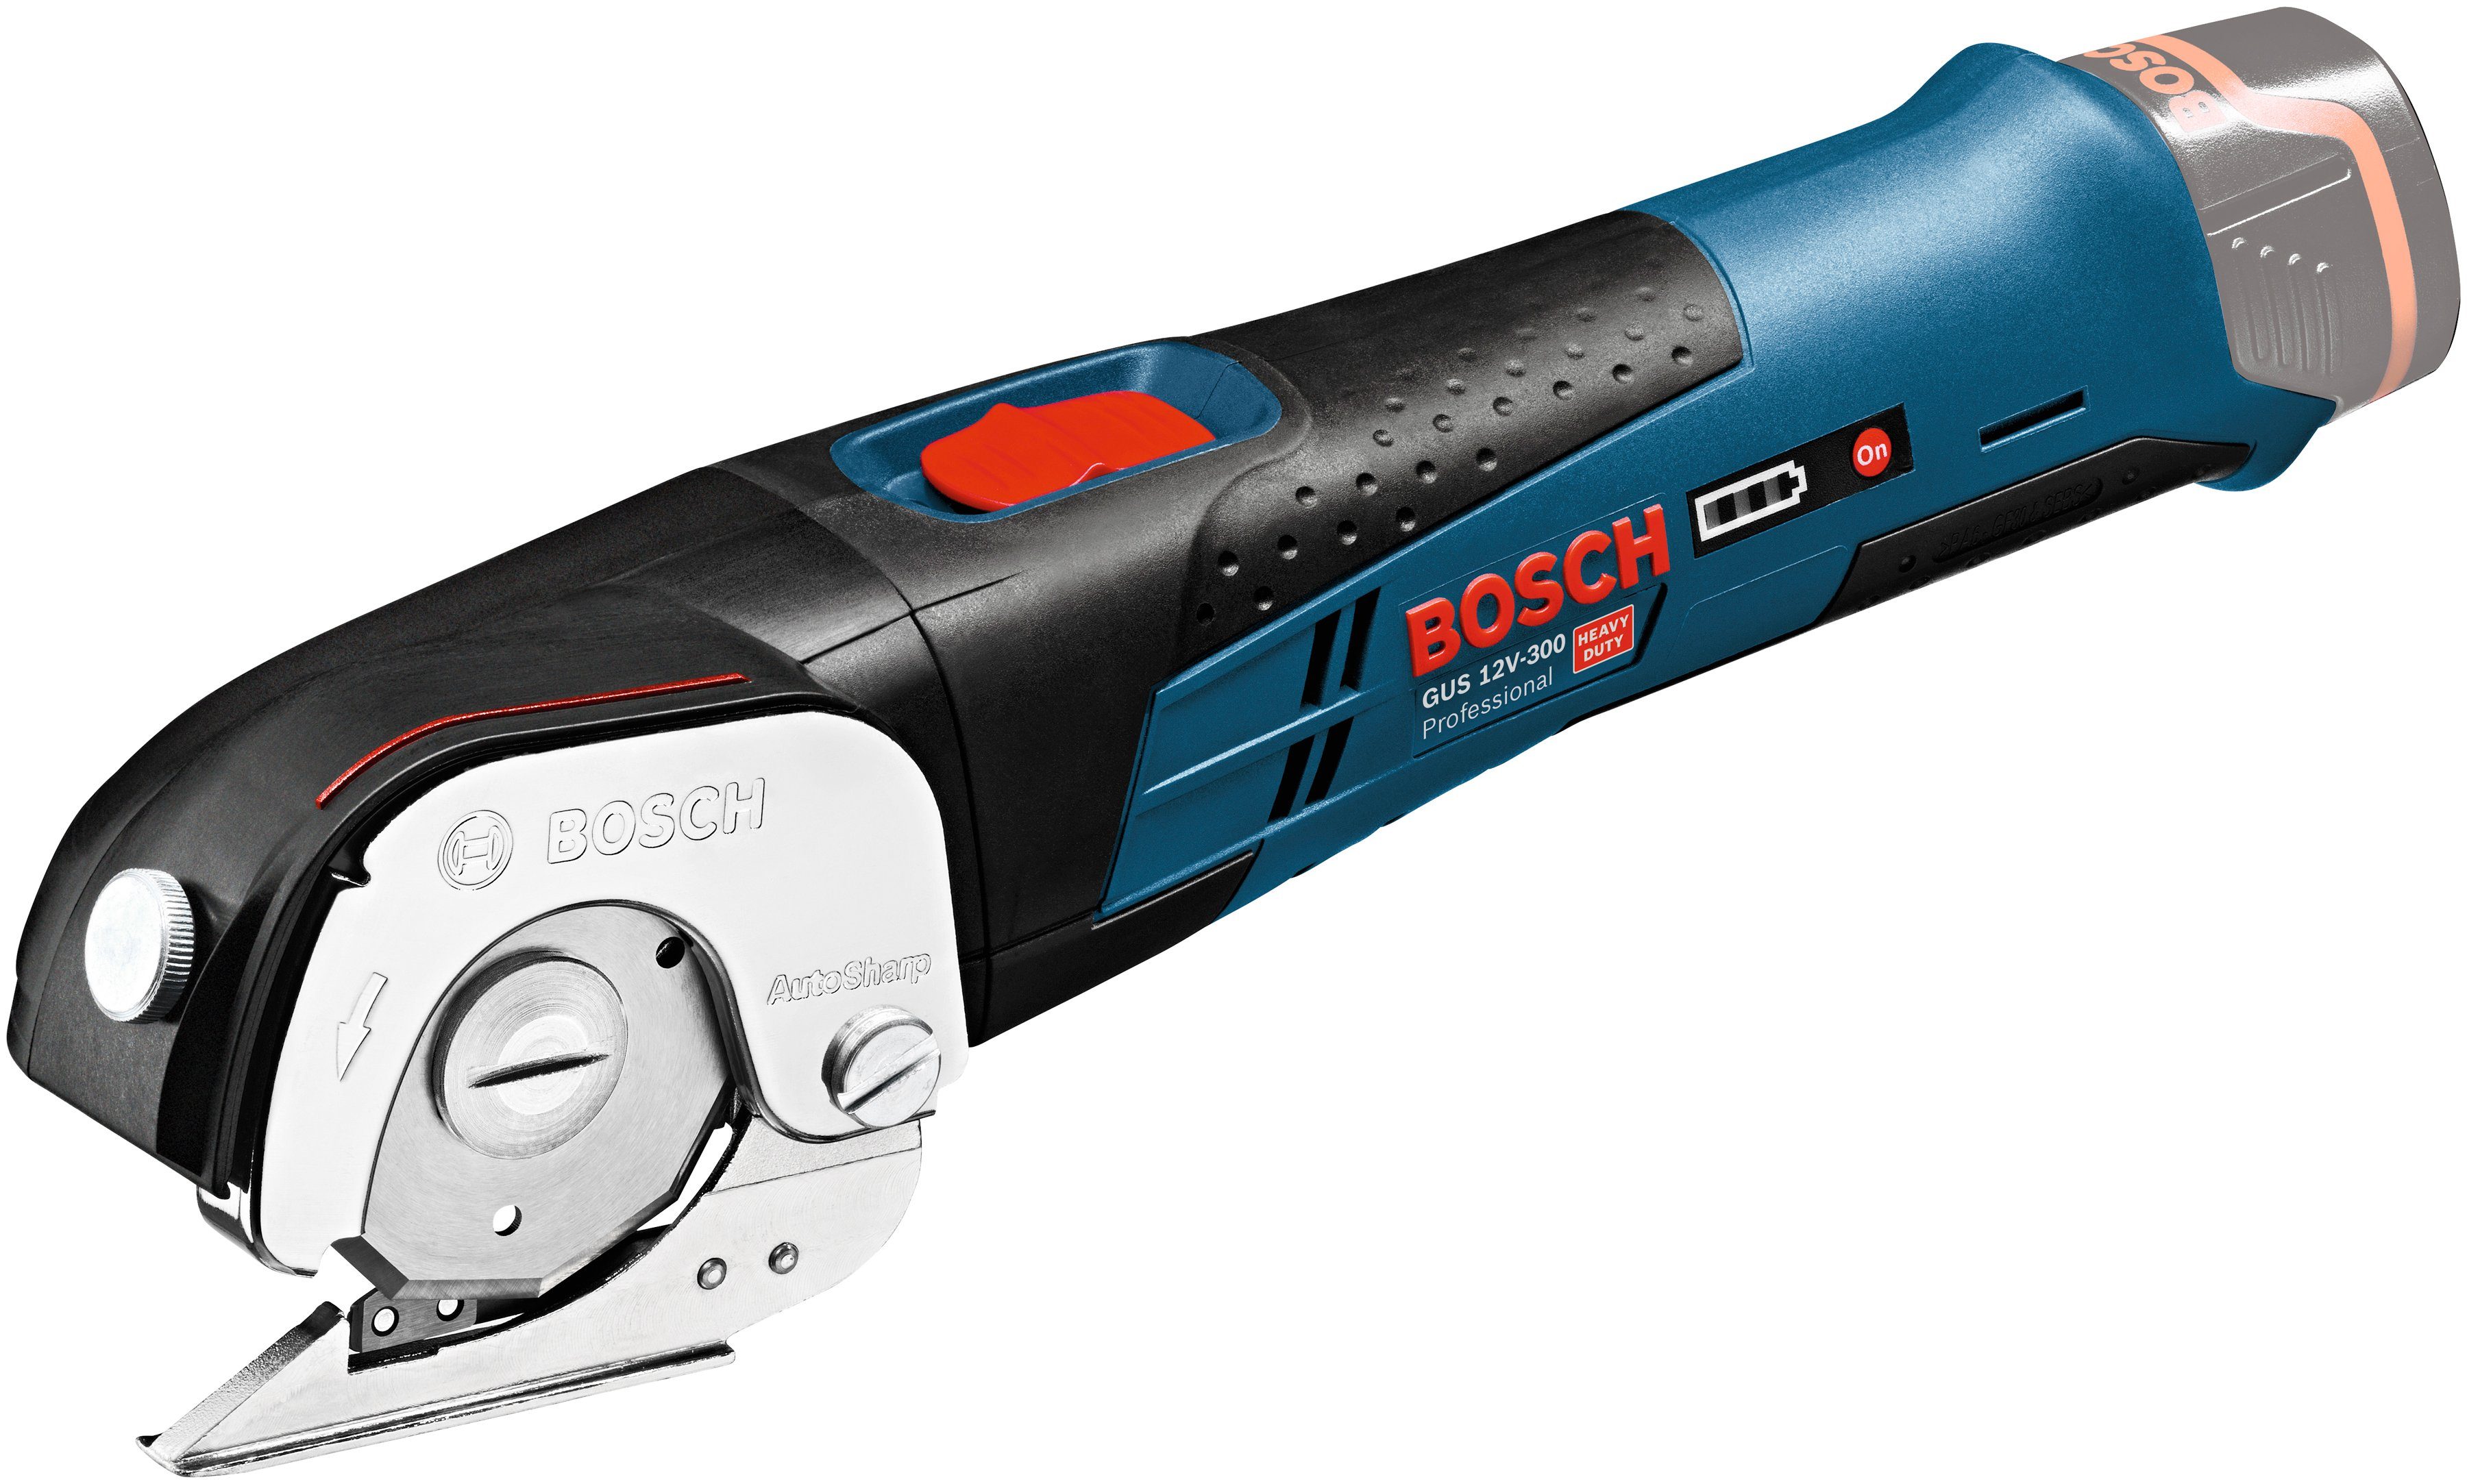 Bosch Professional Akku-Universalschere 12V-300, GUS Ladegerät ohne und Akku